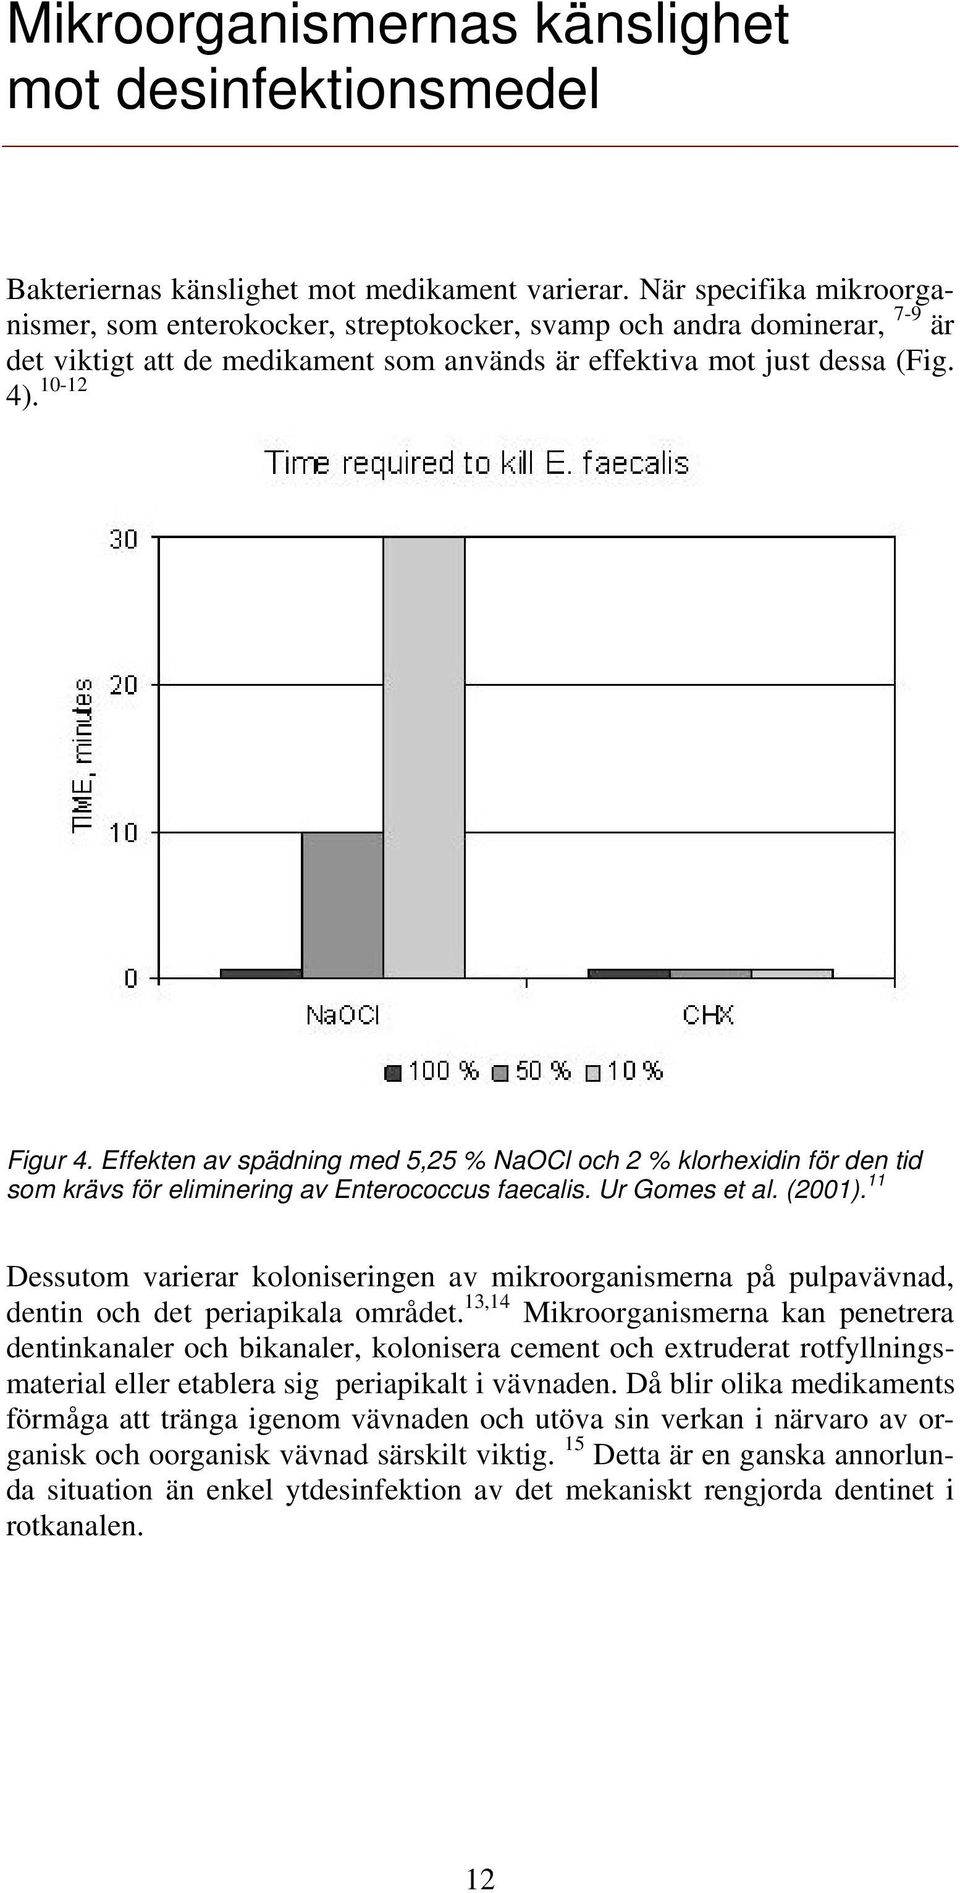 Effekten av spädning med 5,25 % NaOCl och 2 % klorhexidin för den tid som krävs för eliminering av Enterococcus faecalis. Ur Gomes et al. (2001).